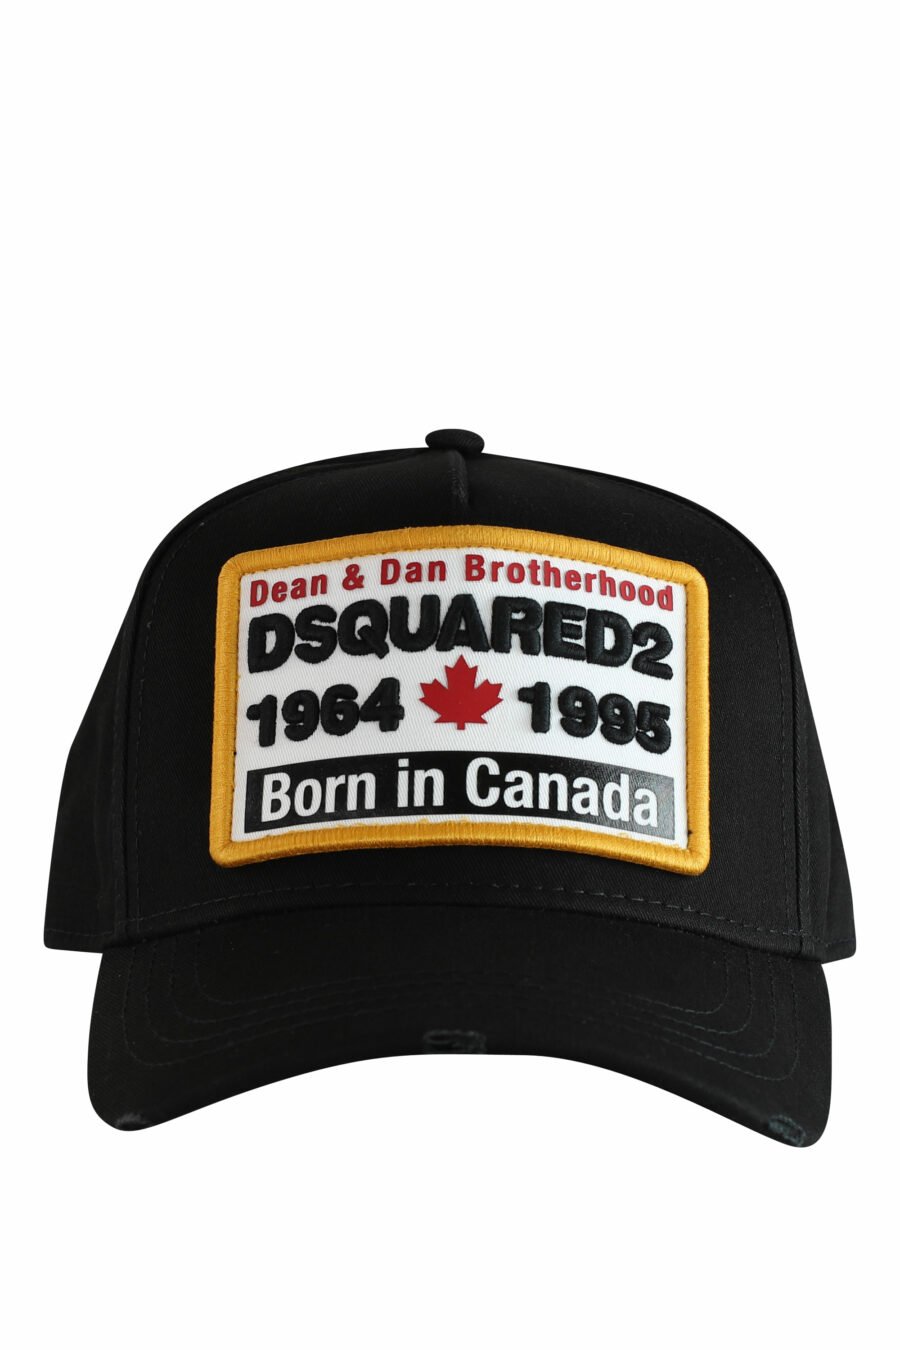 Gorra negra con recuadro blanco con logo y detalles amarillos - IMG 1240